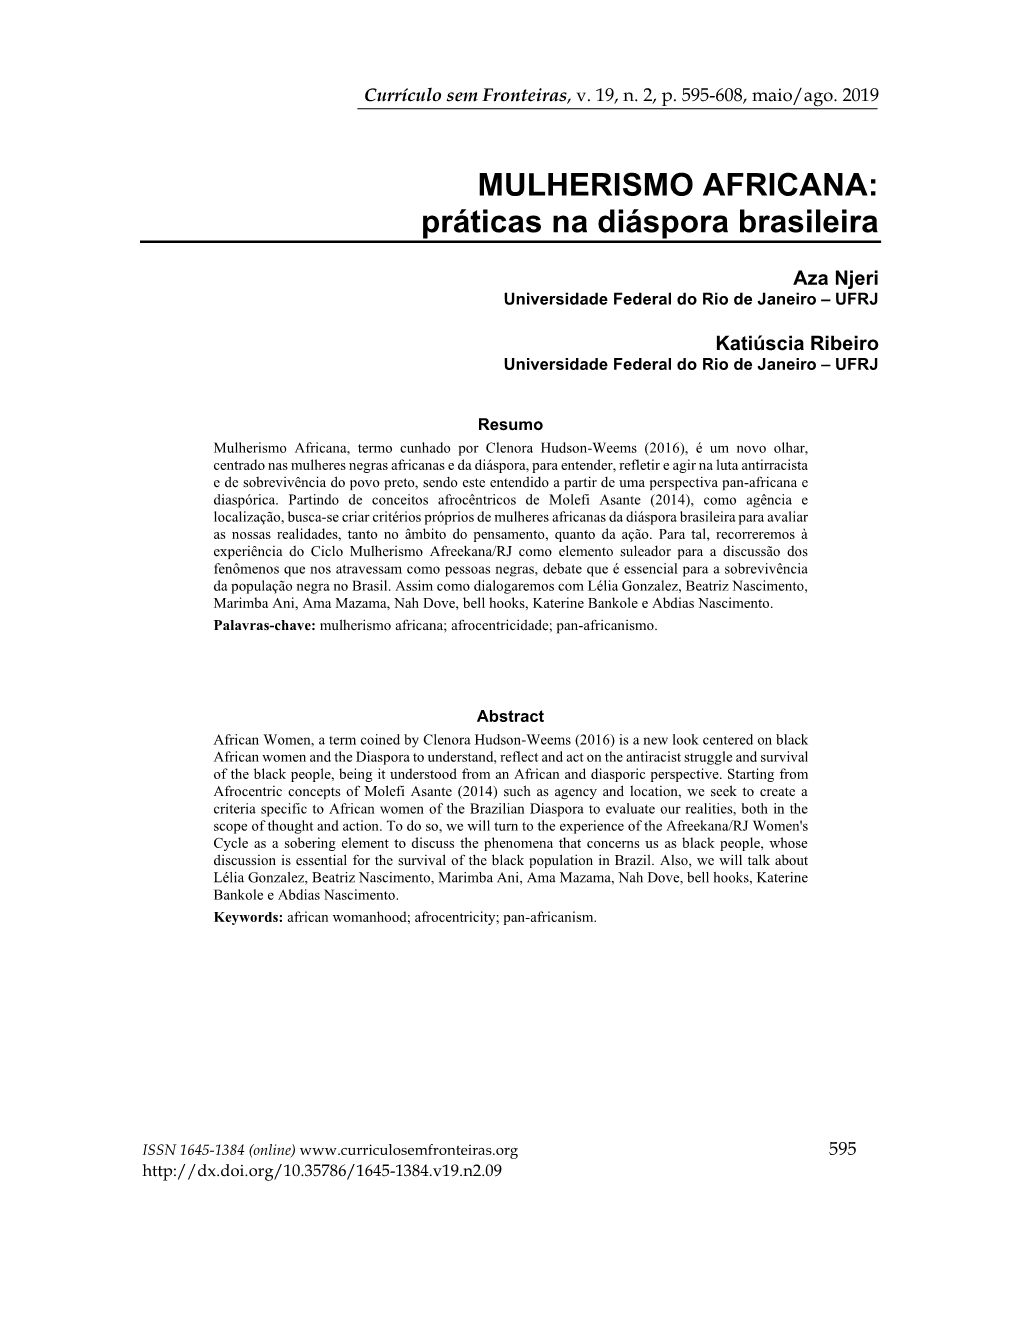 MULHERISMO AFRICANA: Práticas Na Diáspora Brasileira